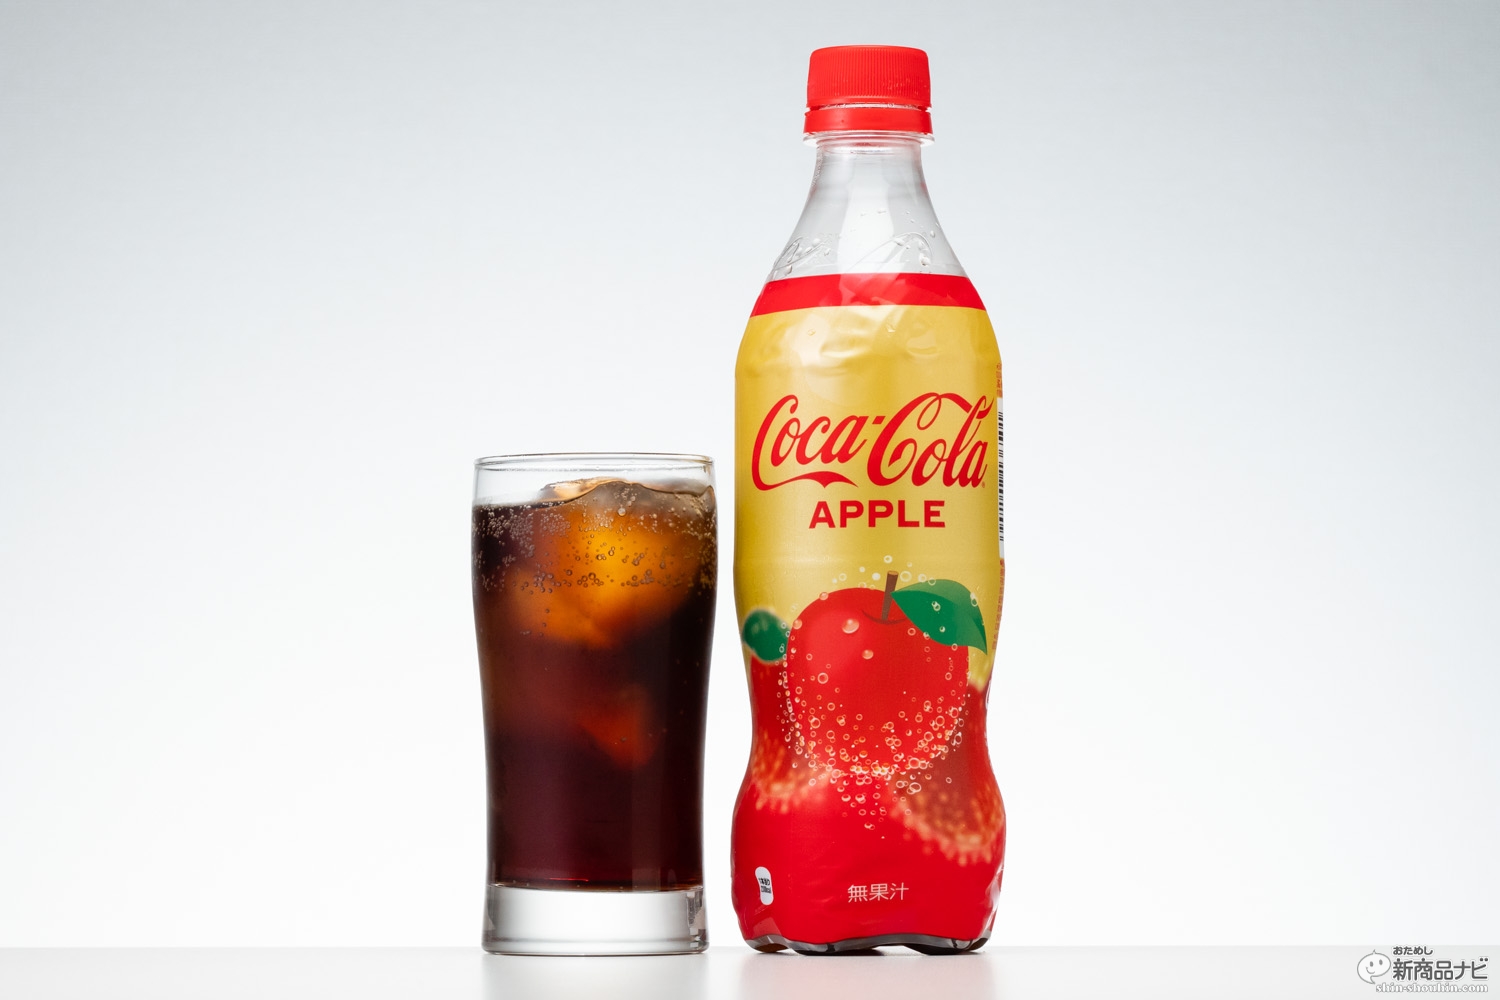 果汁なしでなぜうまい 世界初フレーバー コカ コーラ アップル 新発売 ニコニコニュース